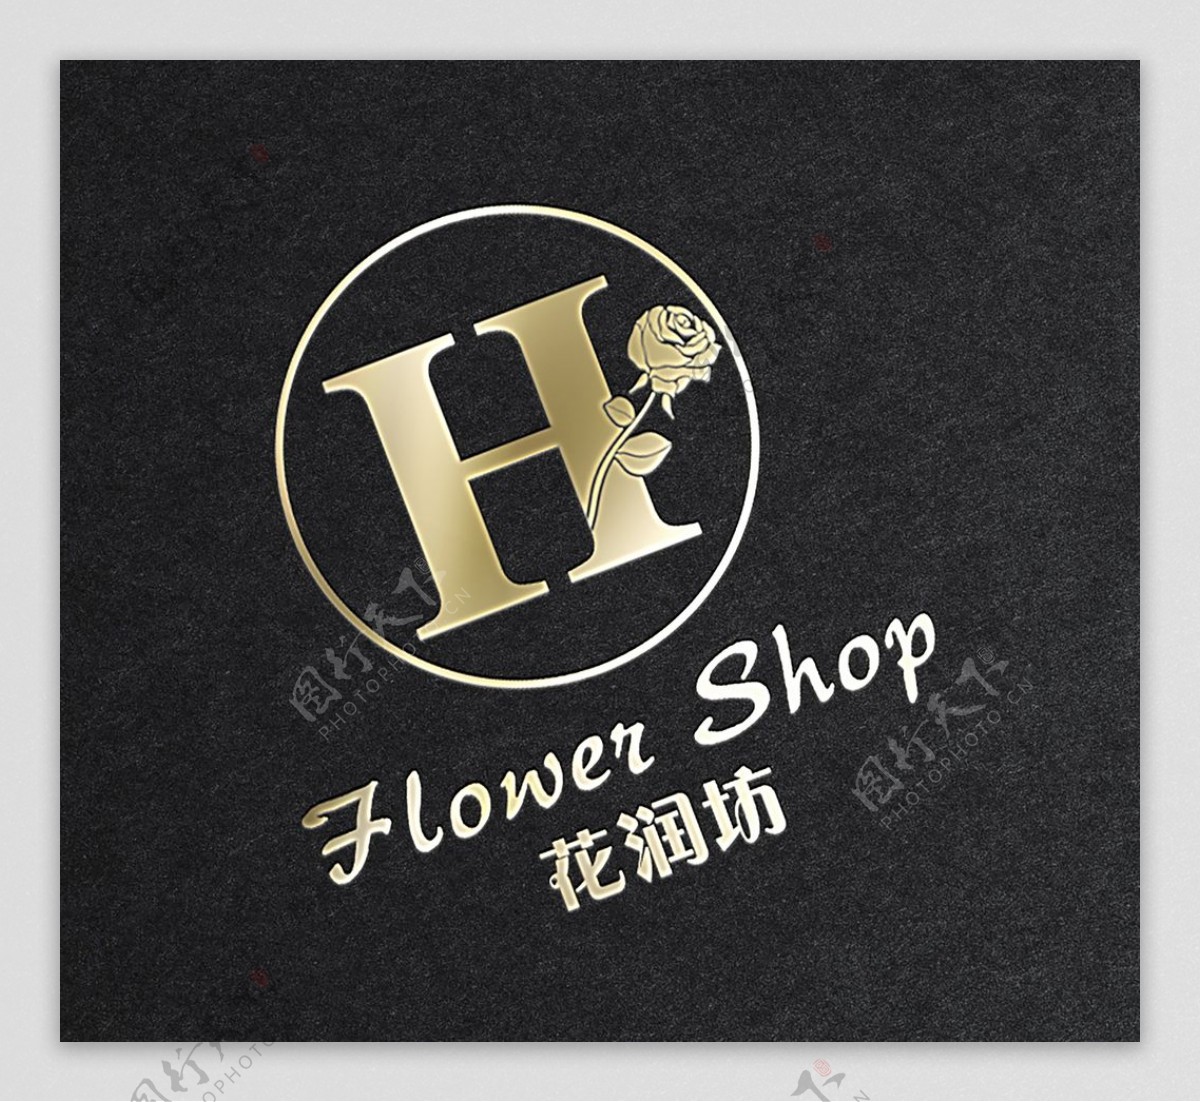 鲜花店logo